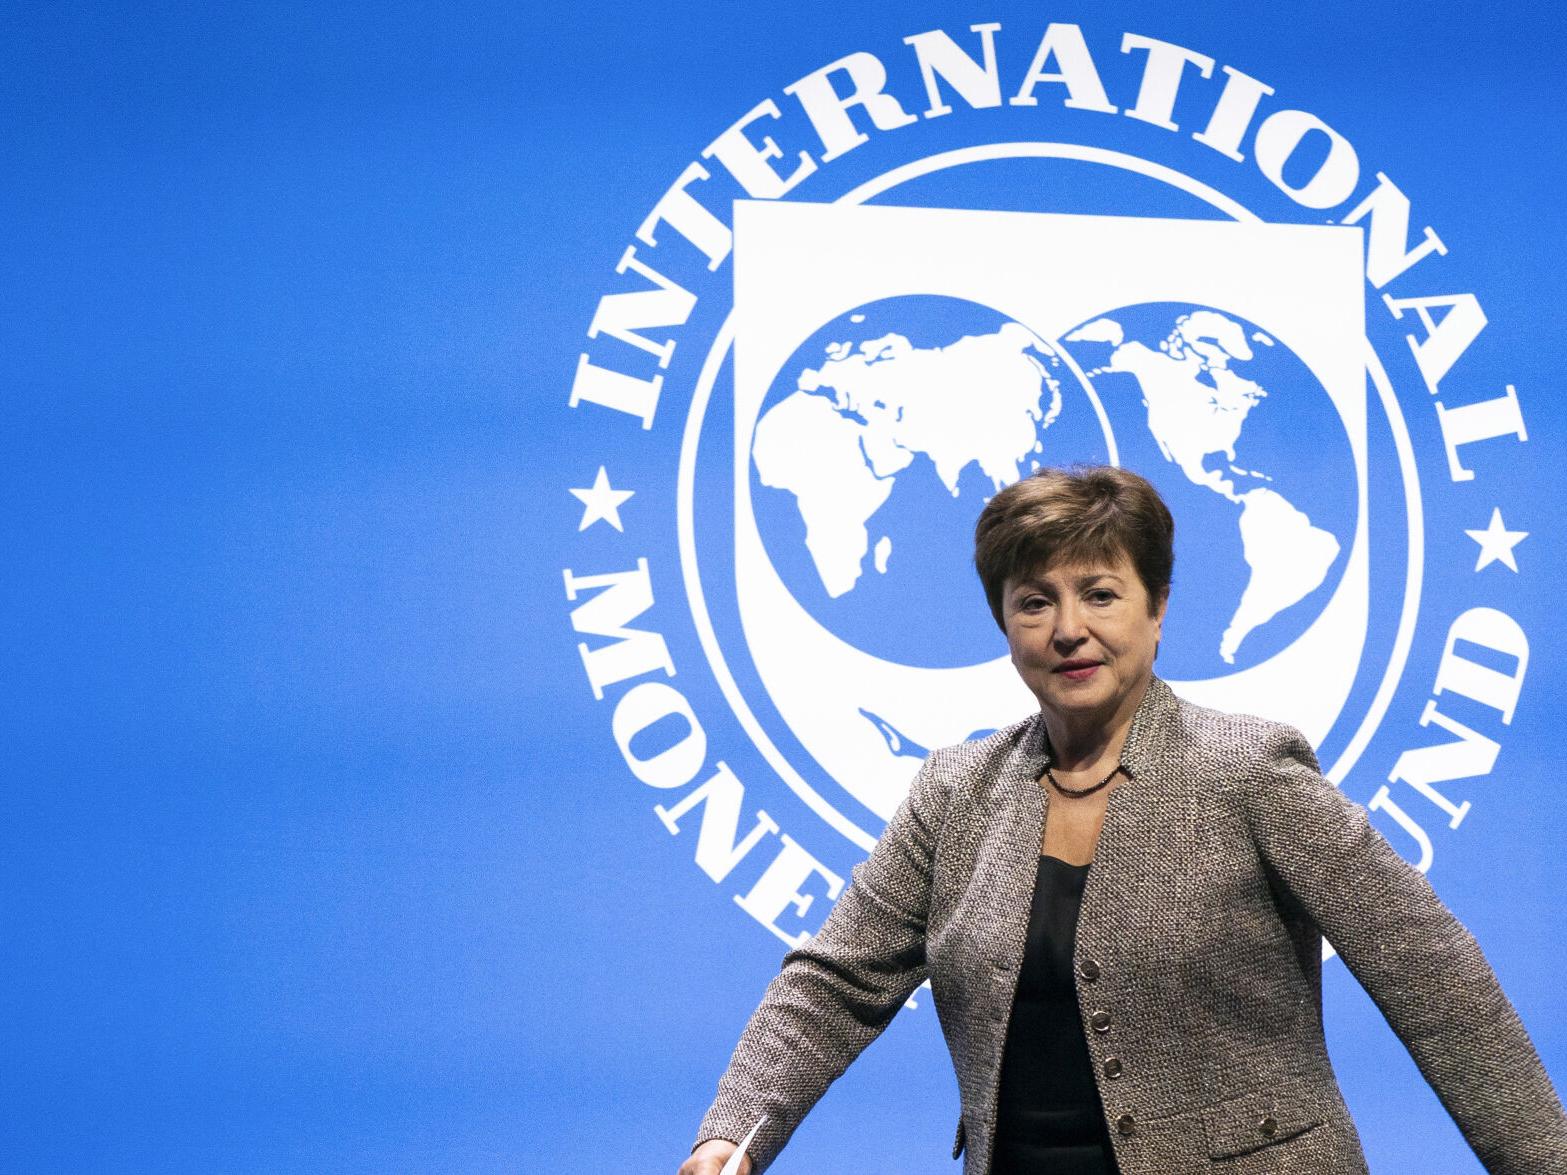 La patronne du FMI prudente pour l’économie mondiale malgré l’espoir d’un atterrissage en douceur